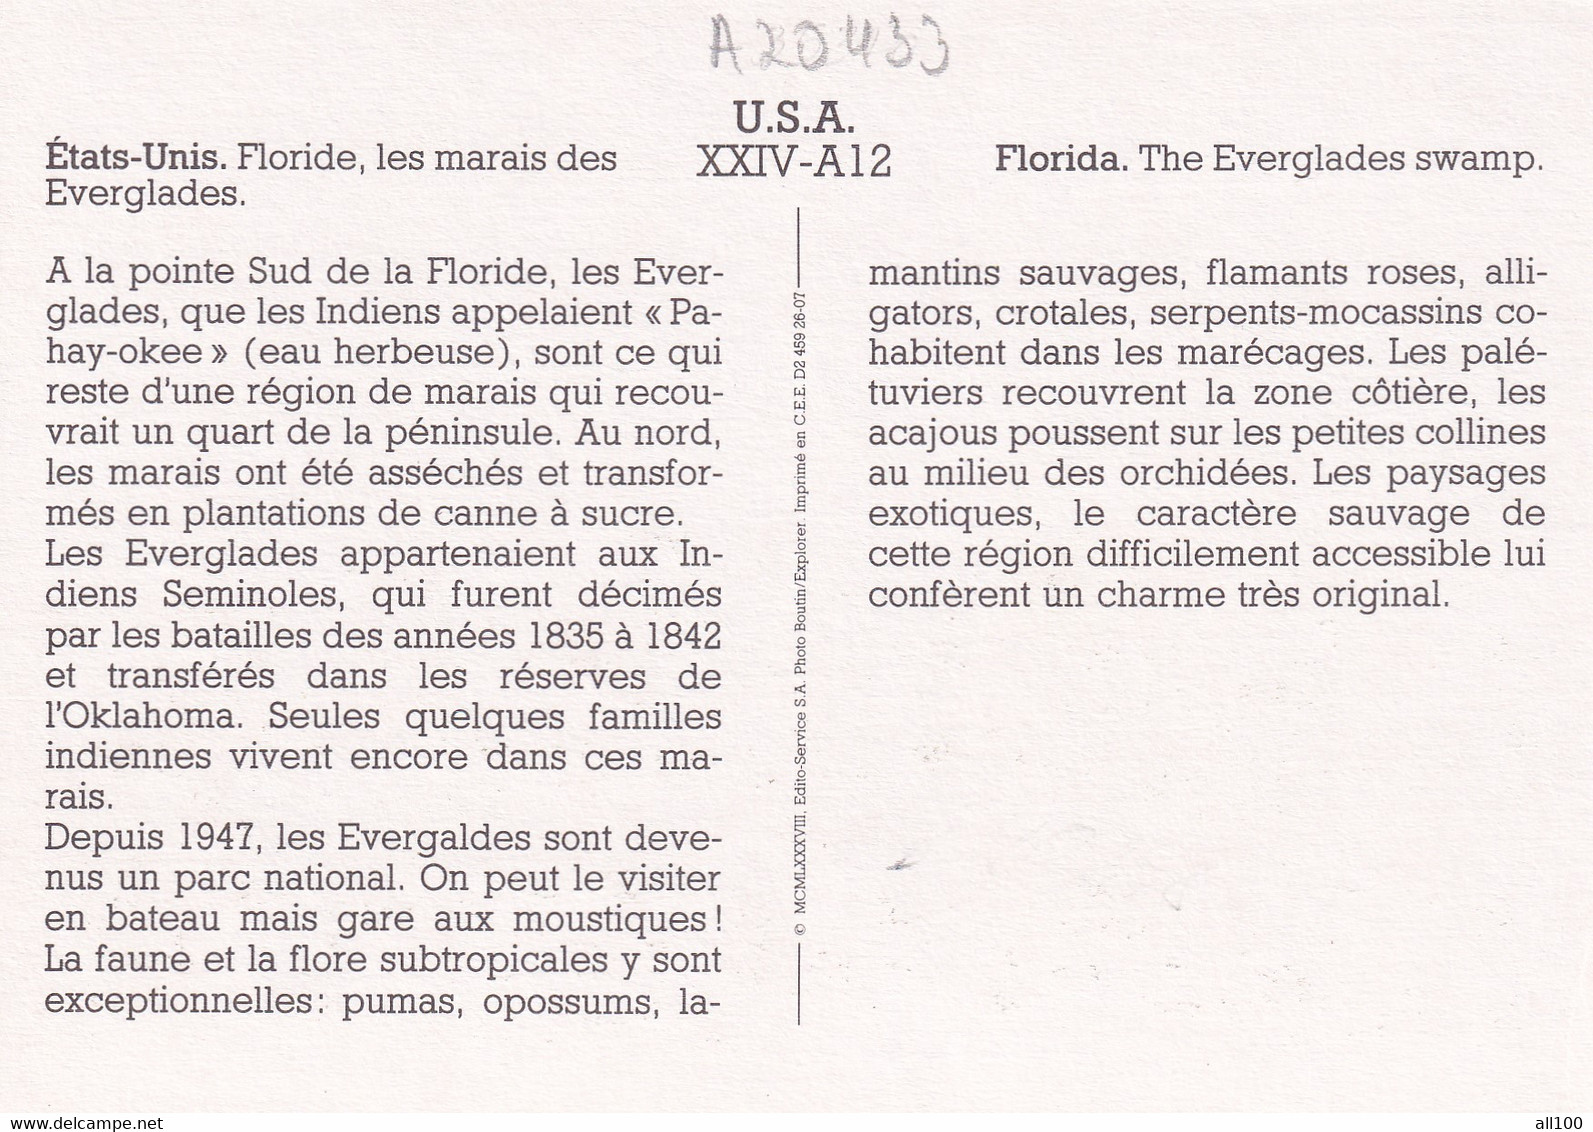 A20433 - FLORIDA THE EVERGLADES SWAMP LES MARAIS DES EVERGLADES NATIONAL PARK USA UNITED STATES OF AMERICA - USA Nationalparks